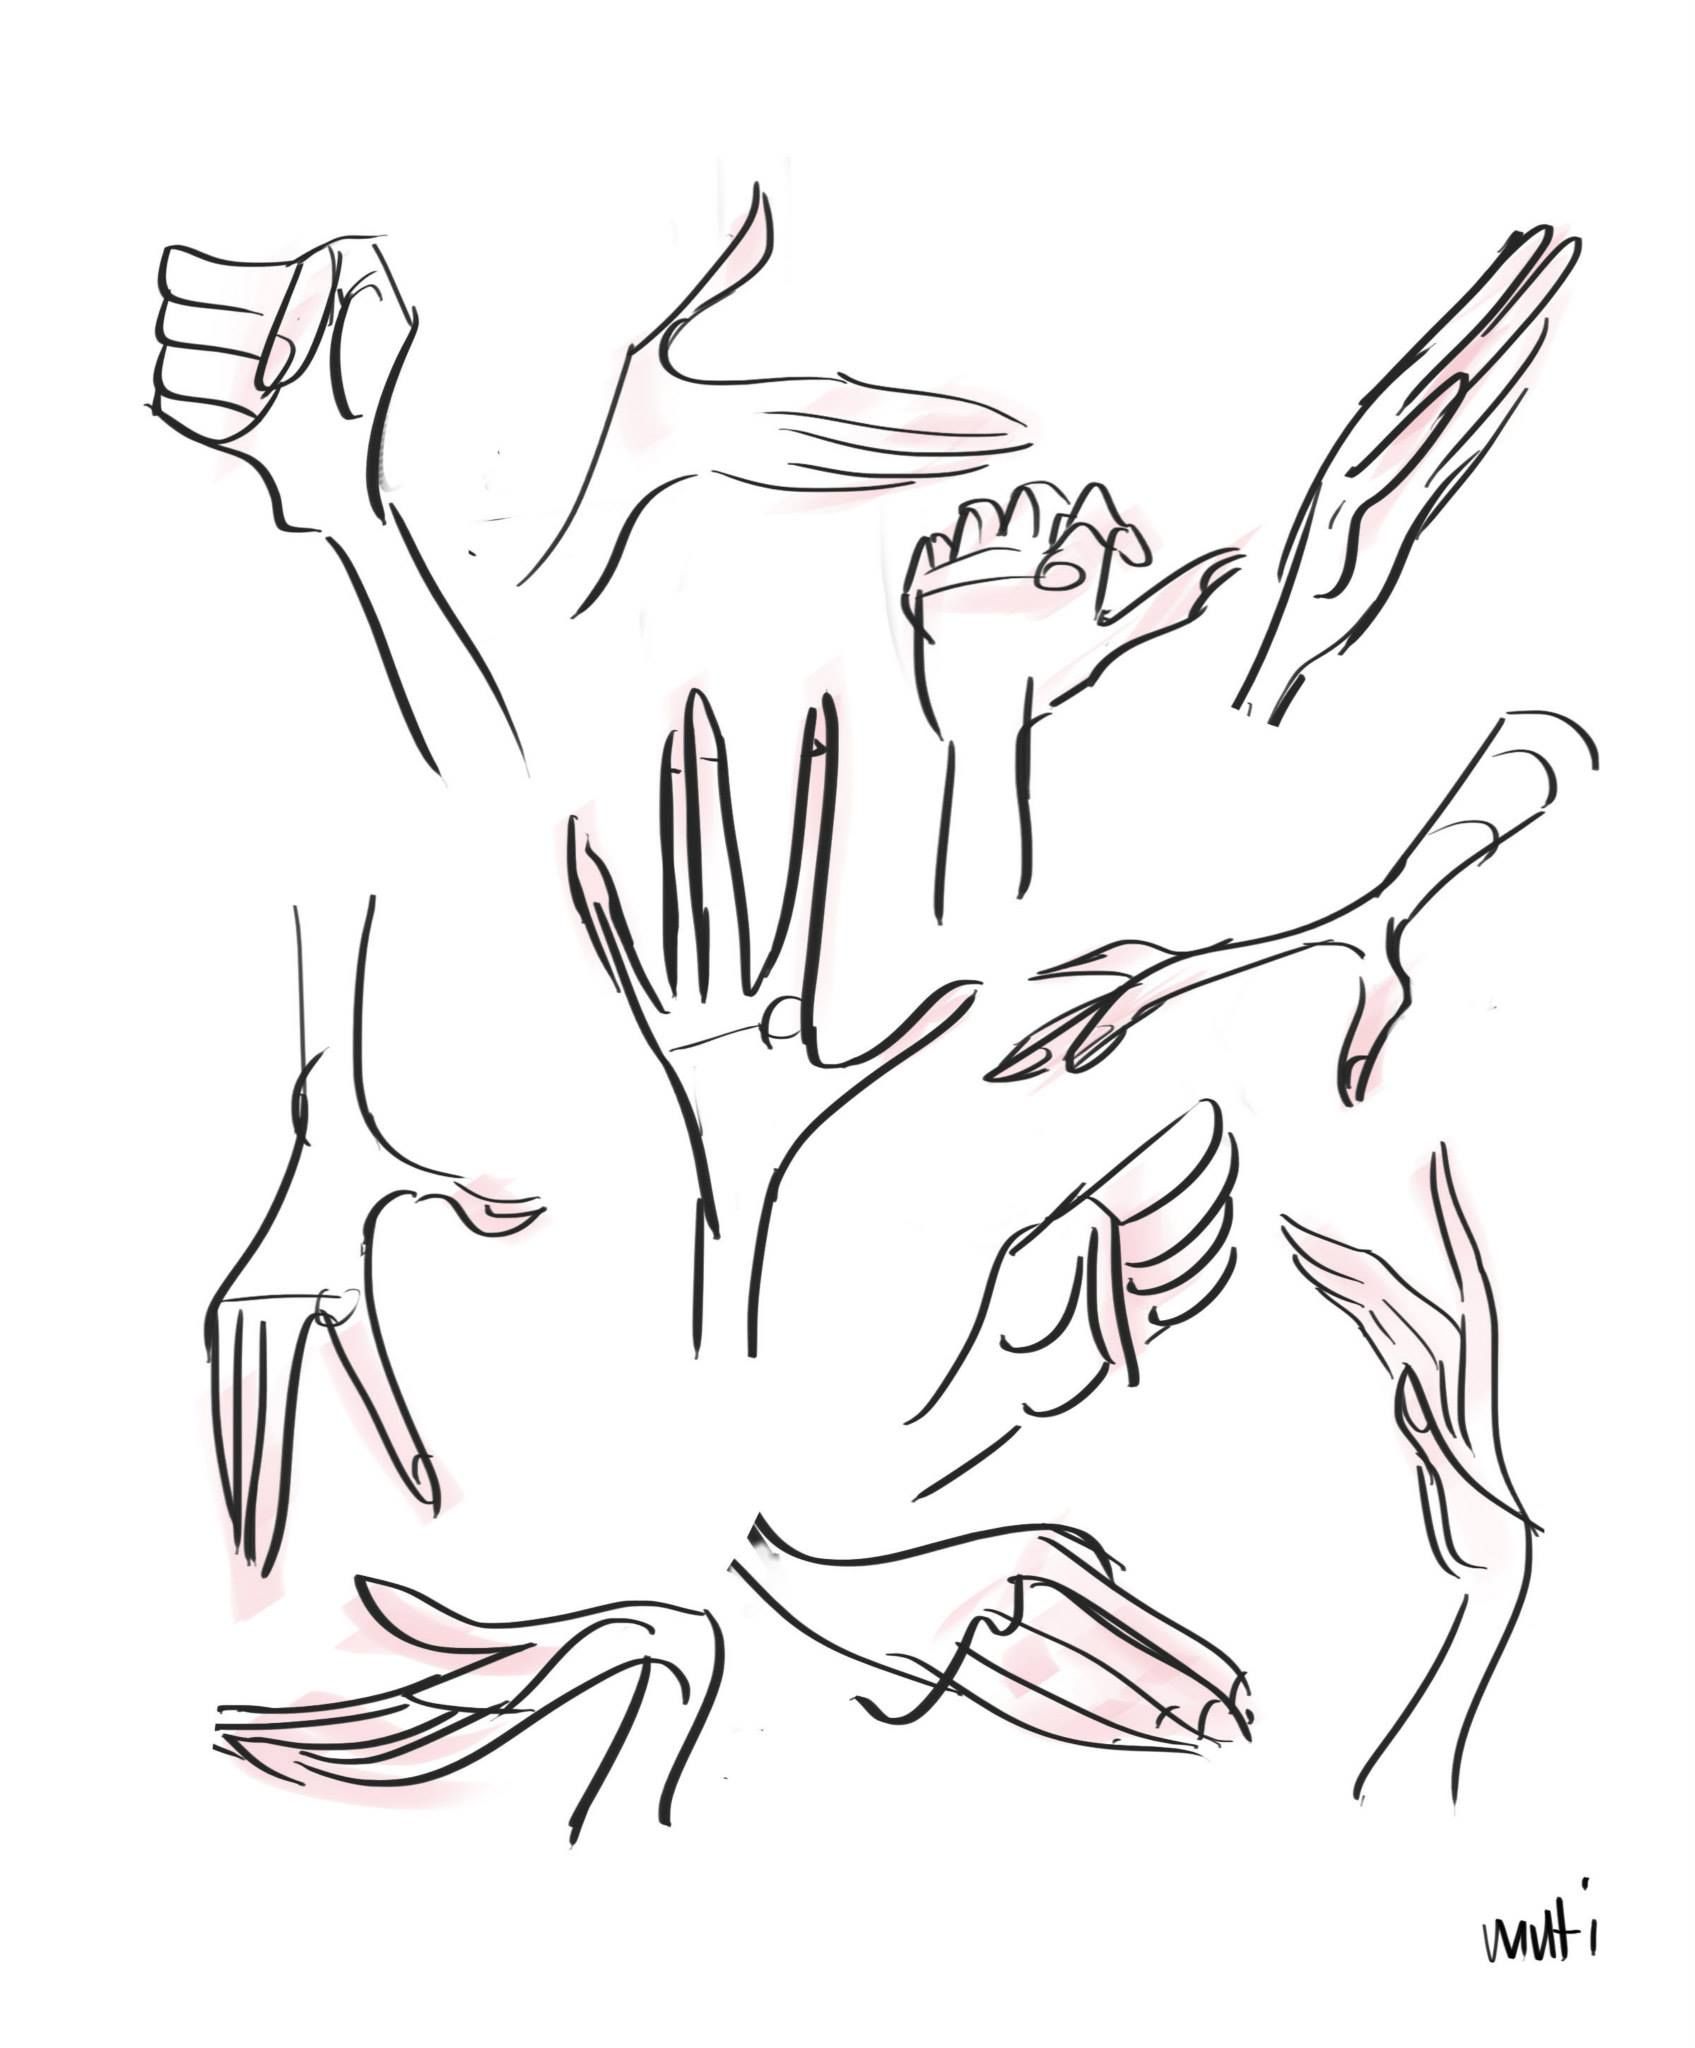 Разные стили рисования рук